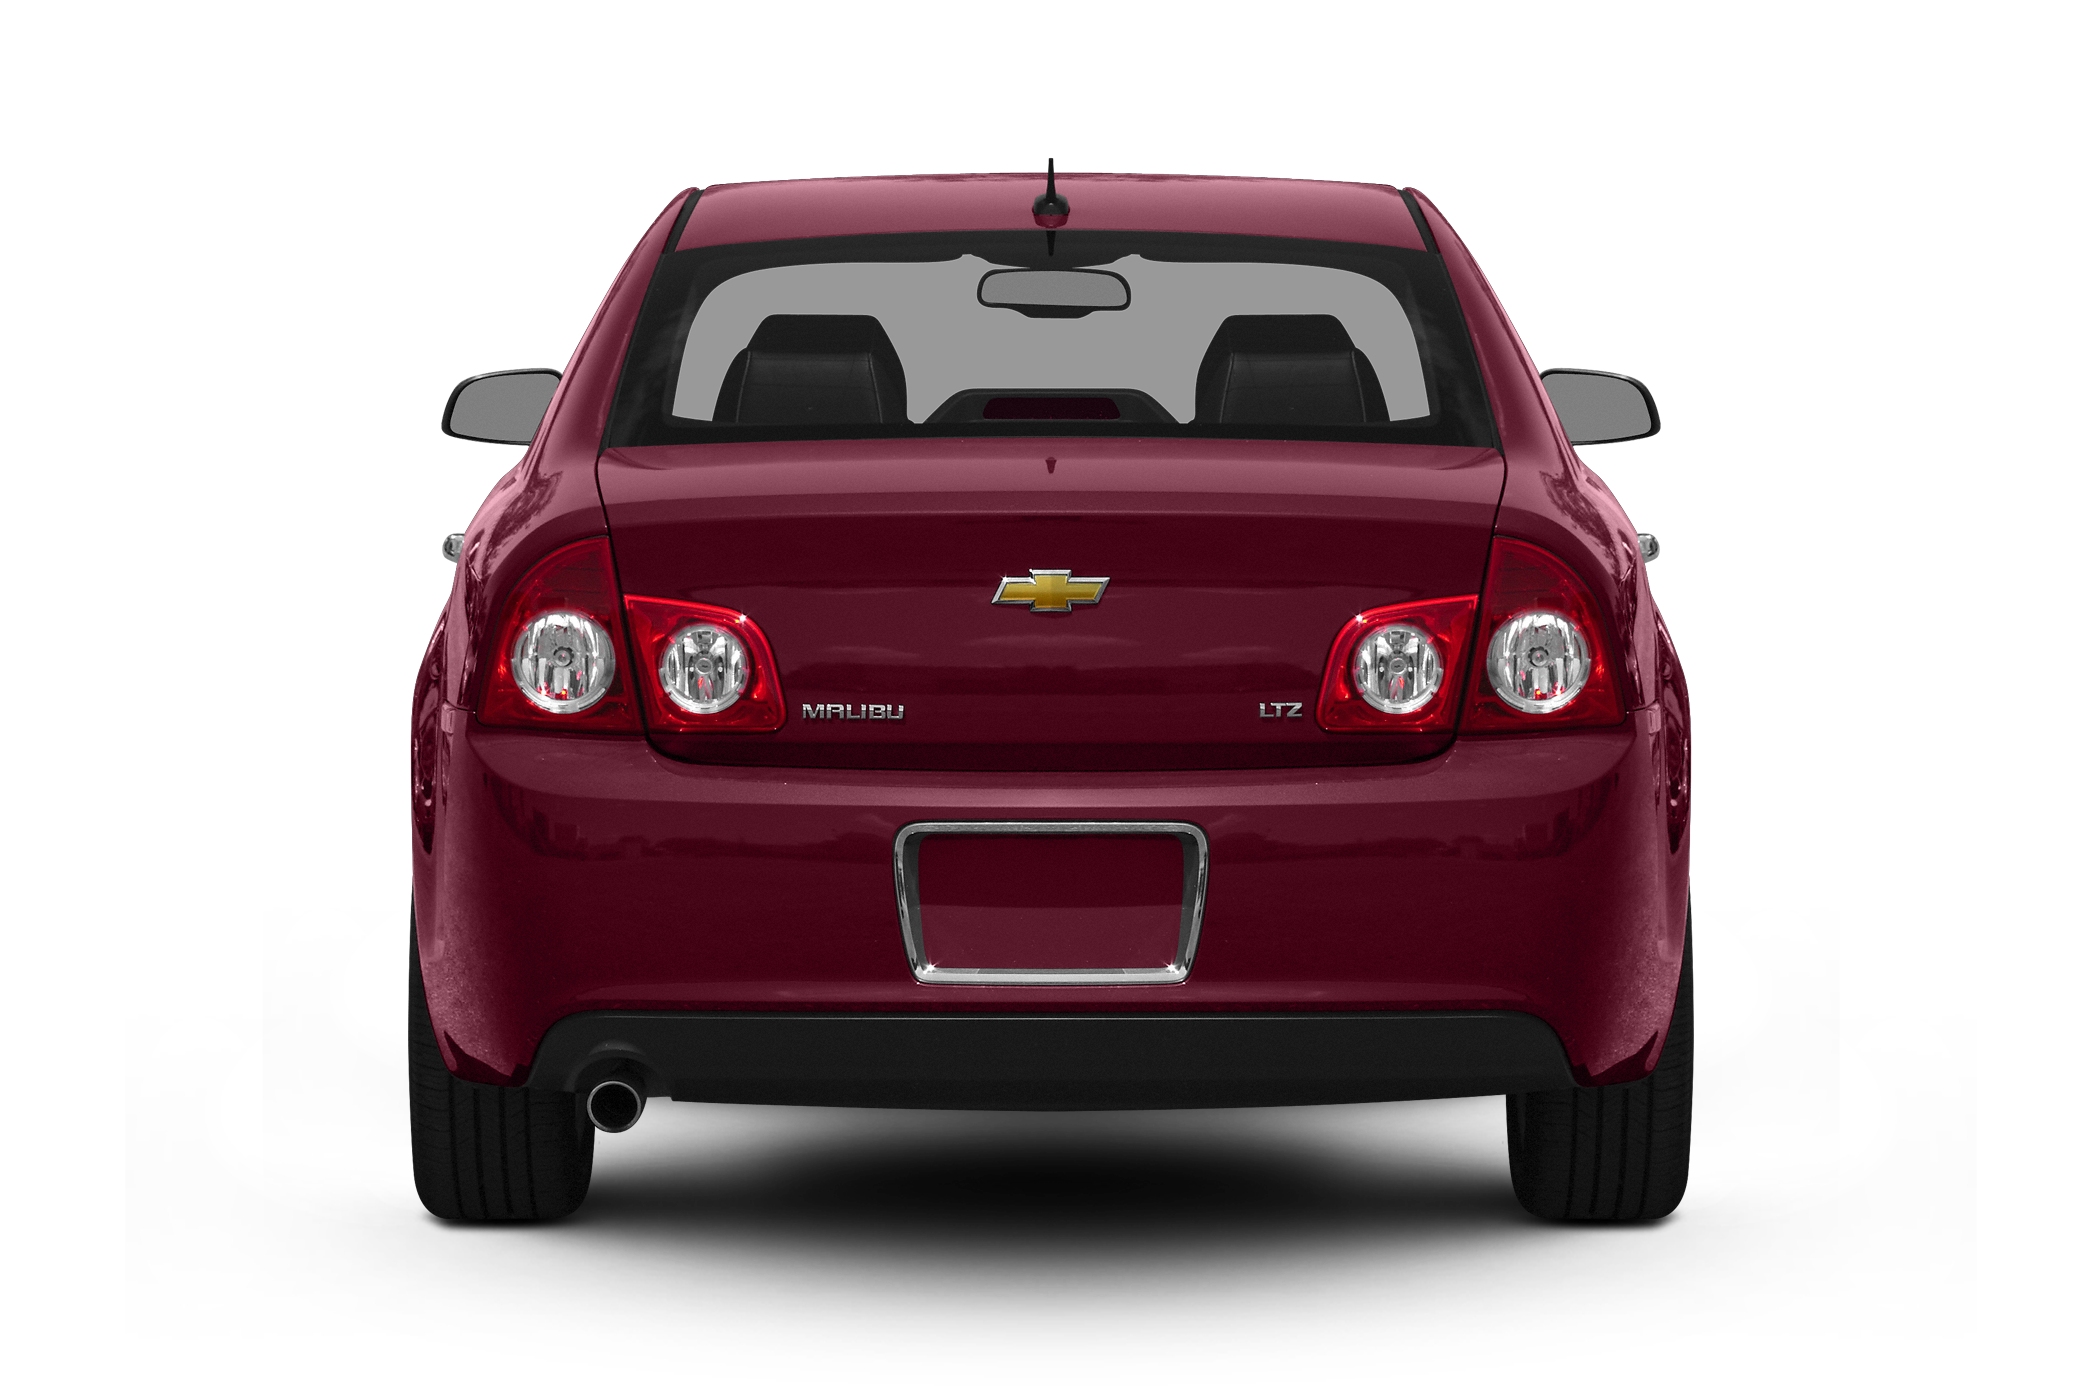 2009 Chevrolet Malibu